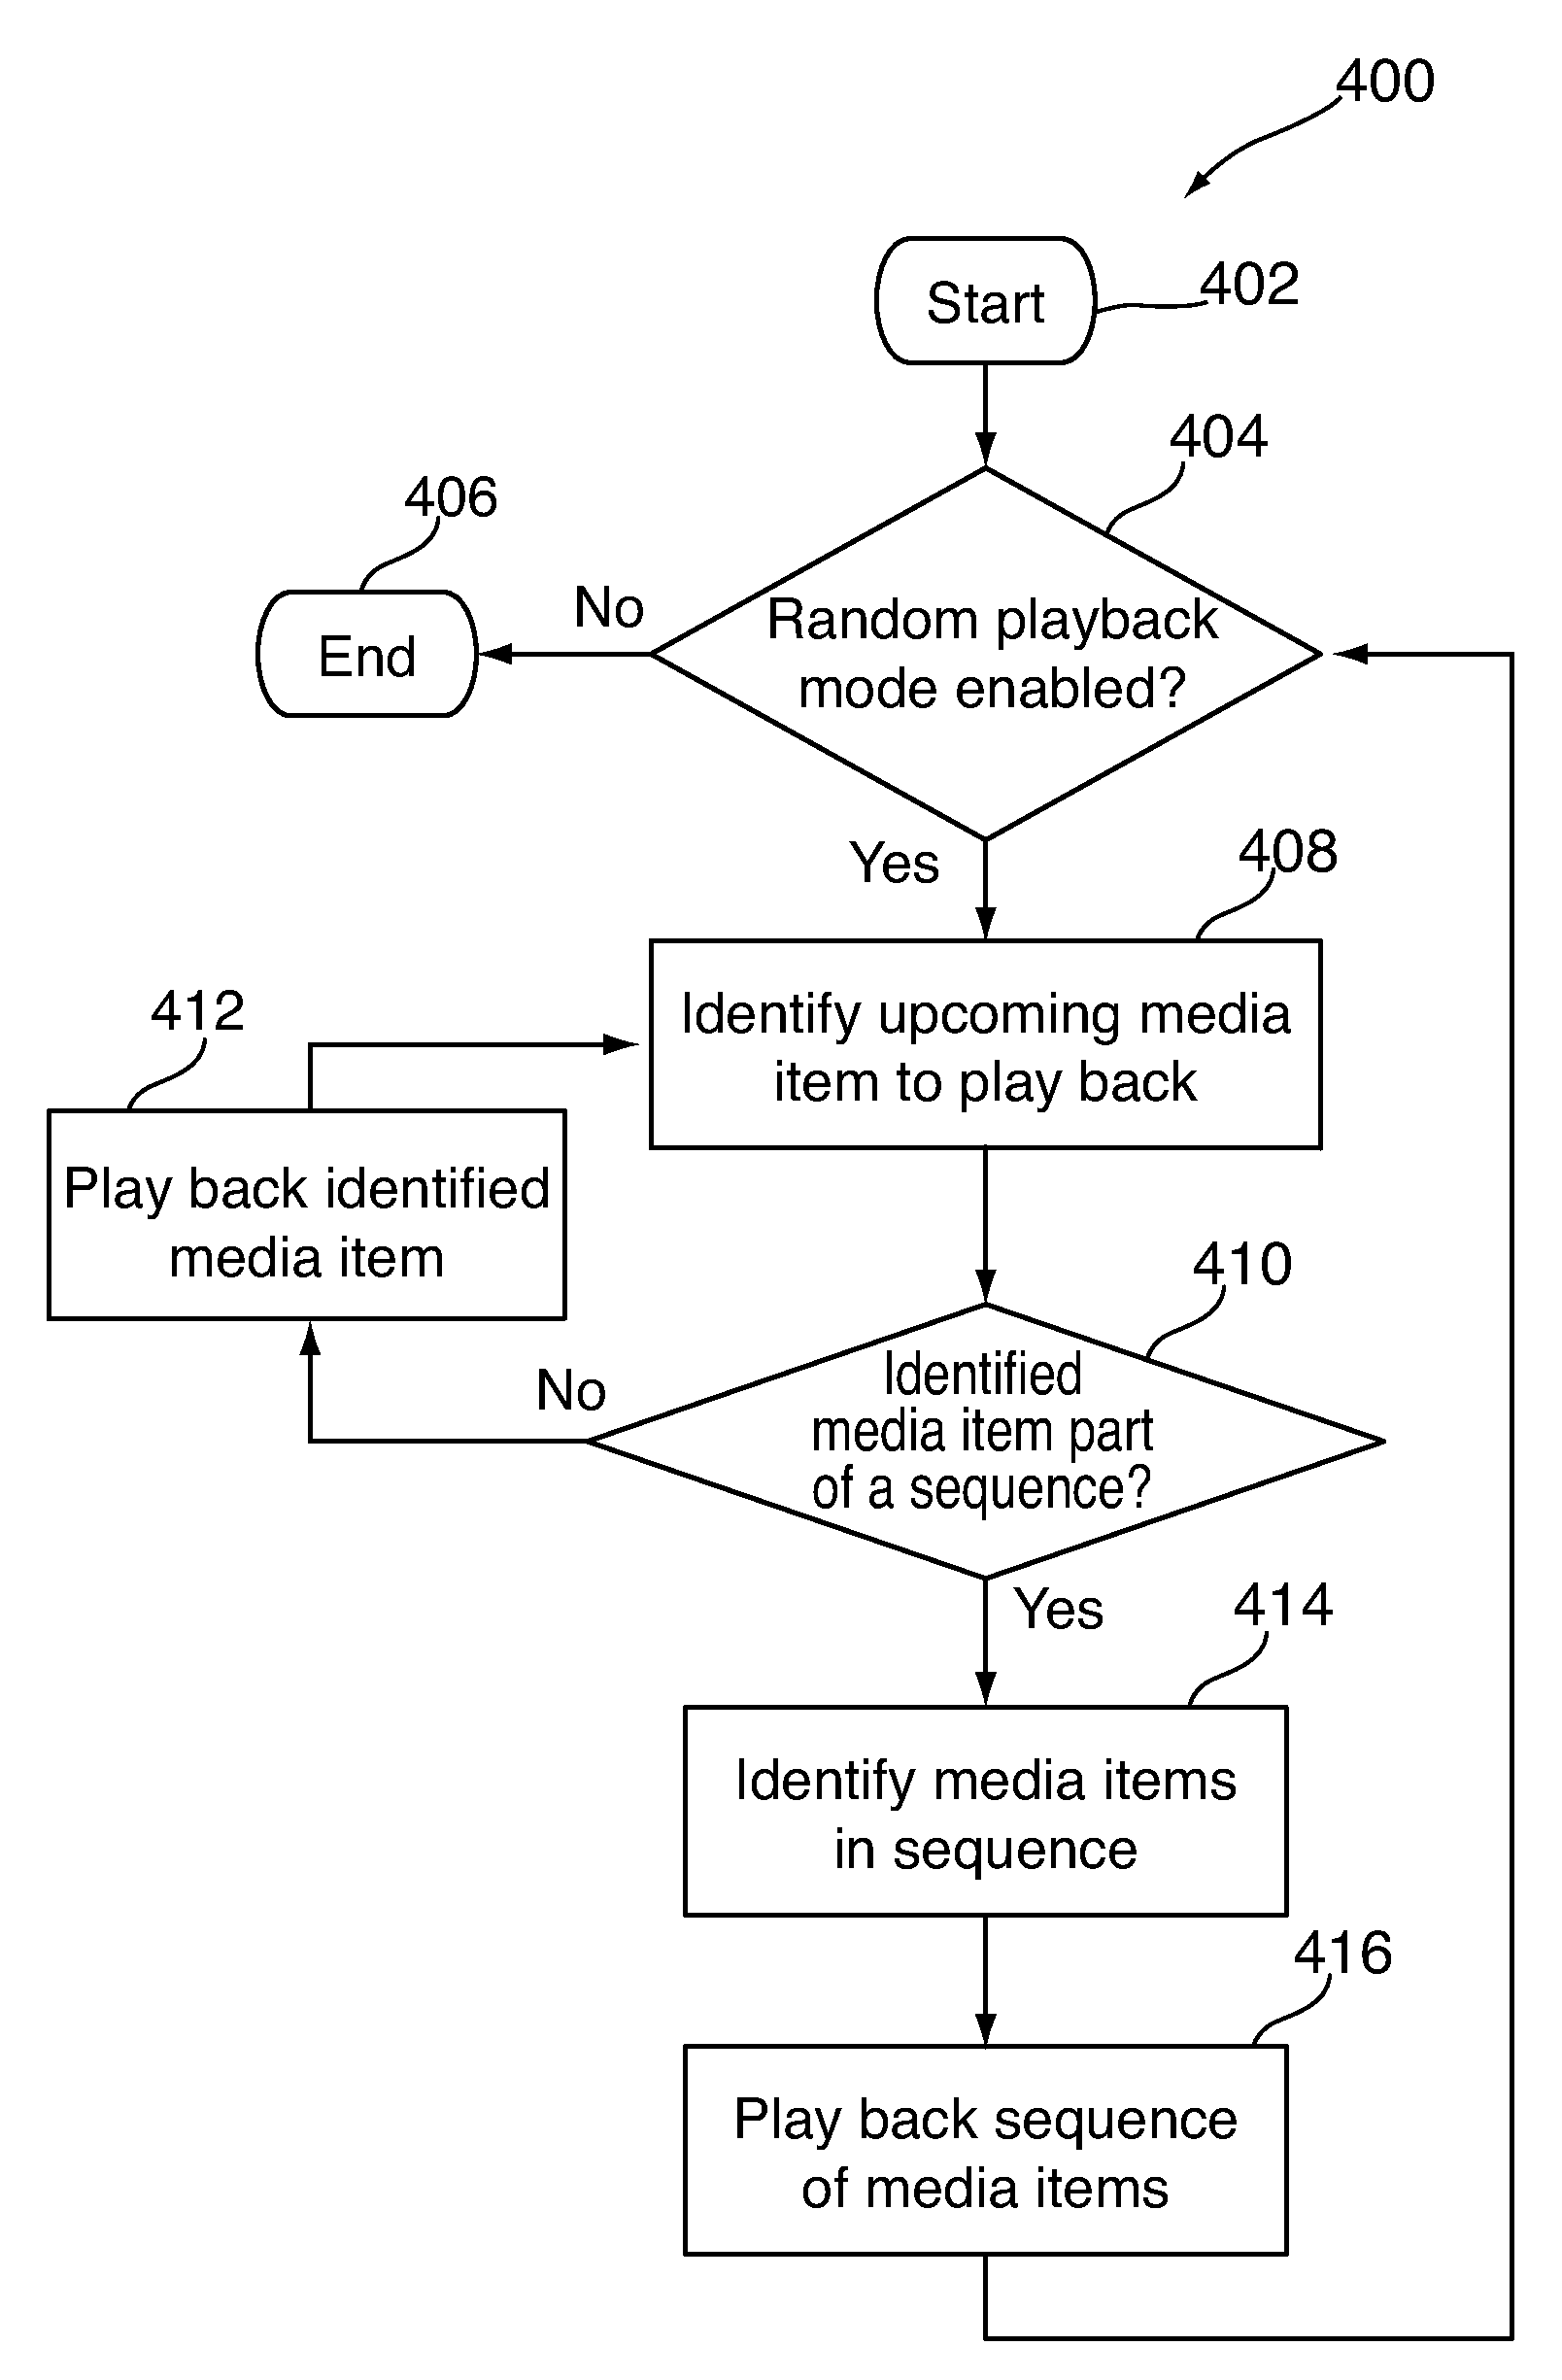 Song flow methodology in random playback